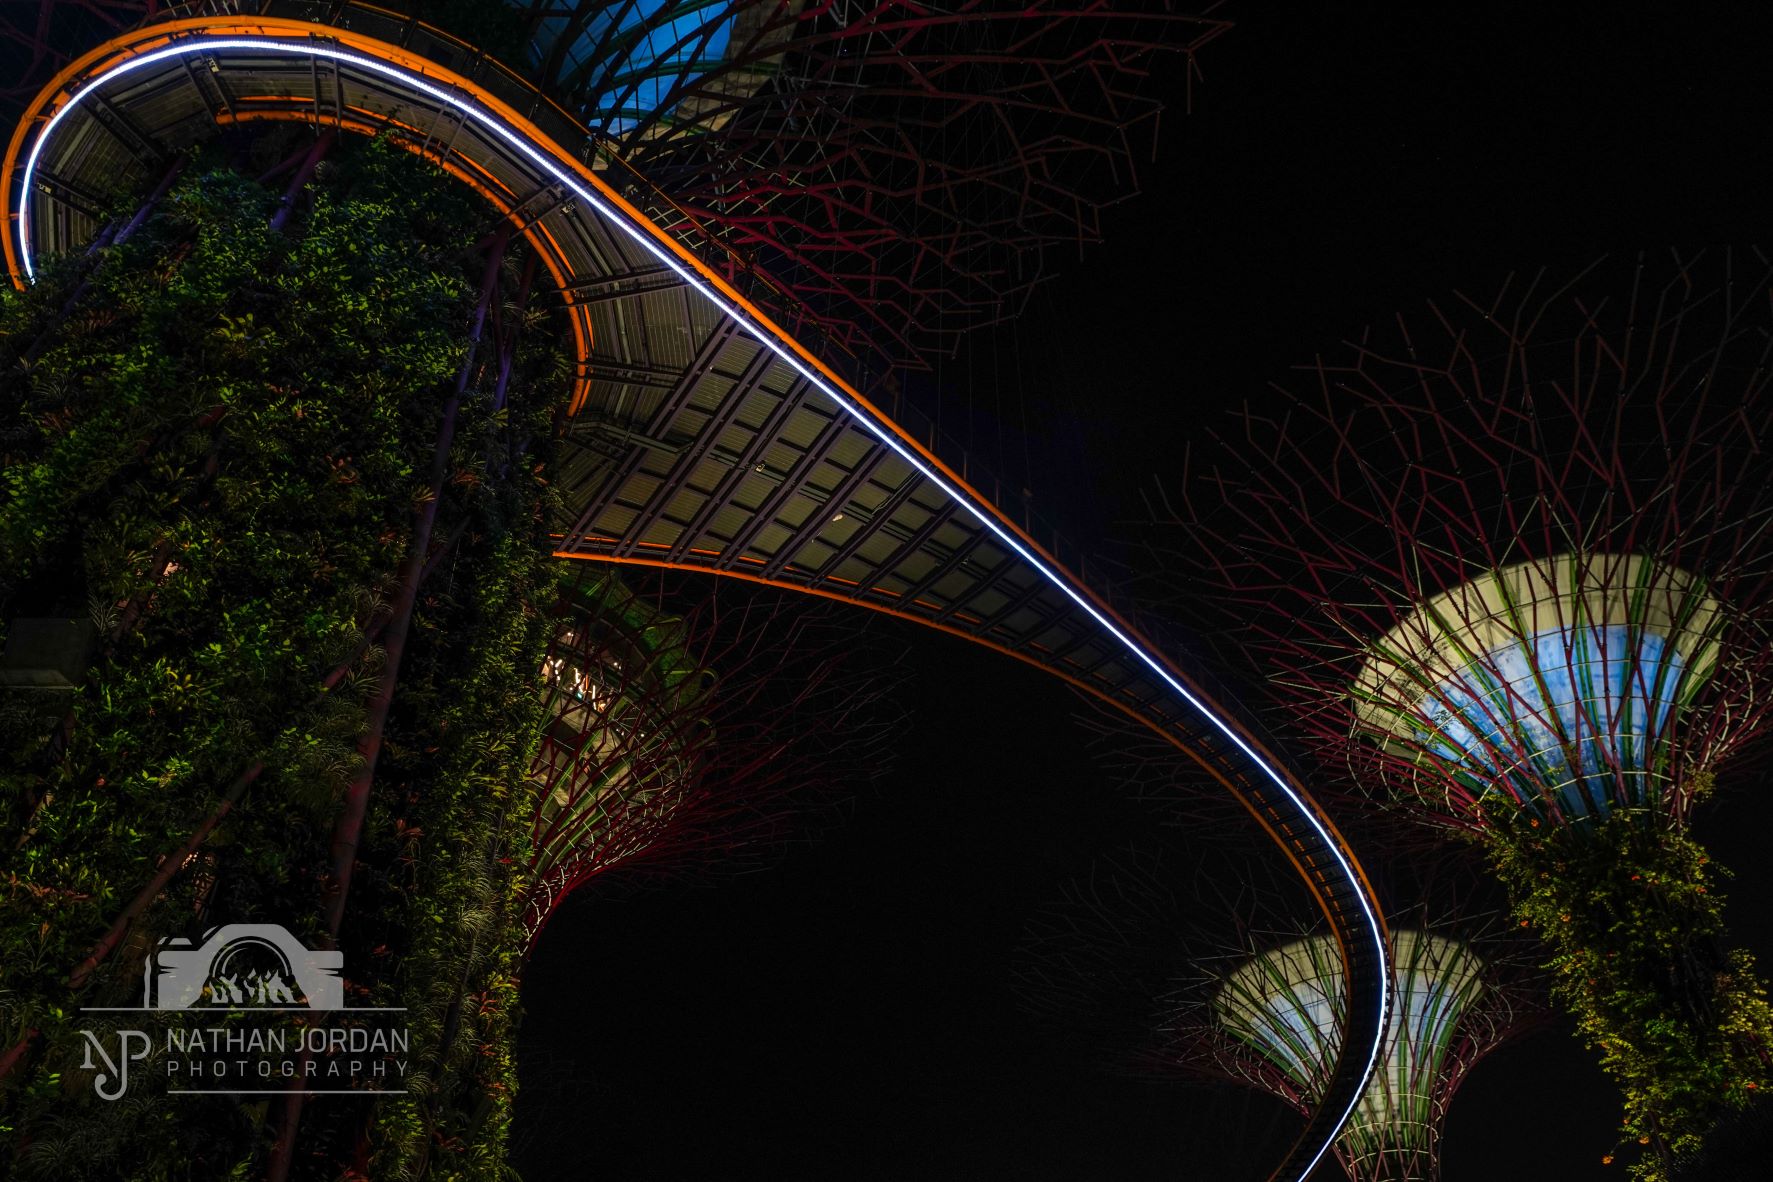 Marina Bay Sands Supertrees at night in Singapore nathan jordan photography